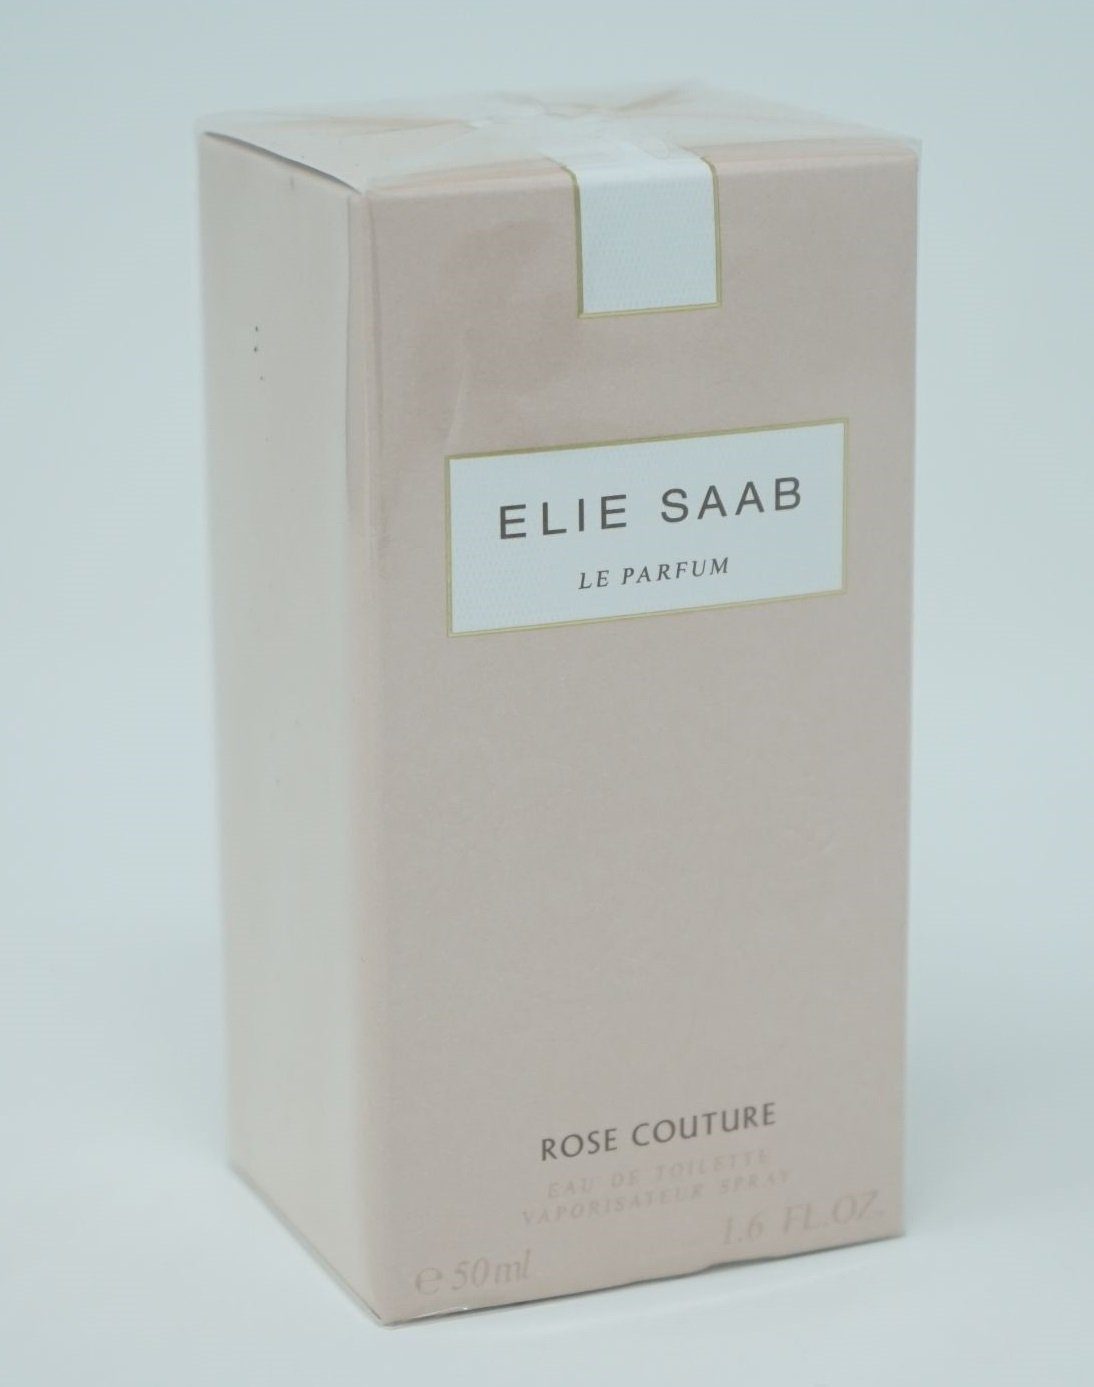 LANCOME ELIE SAAB Eau de Toilette Elie Saab Le Parfum Rose Couture Eau de Toilette Spray 50 ml